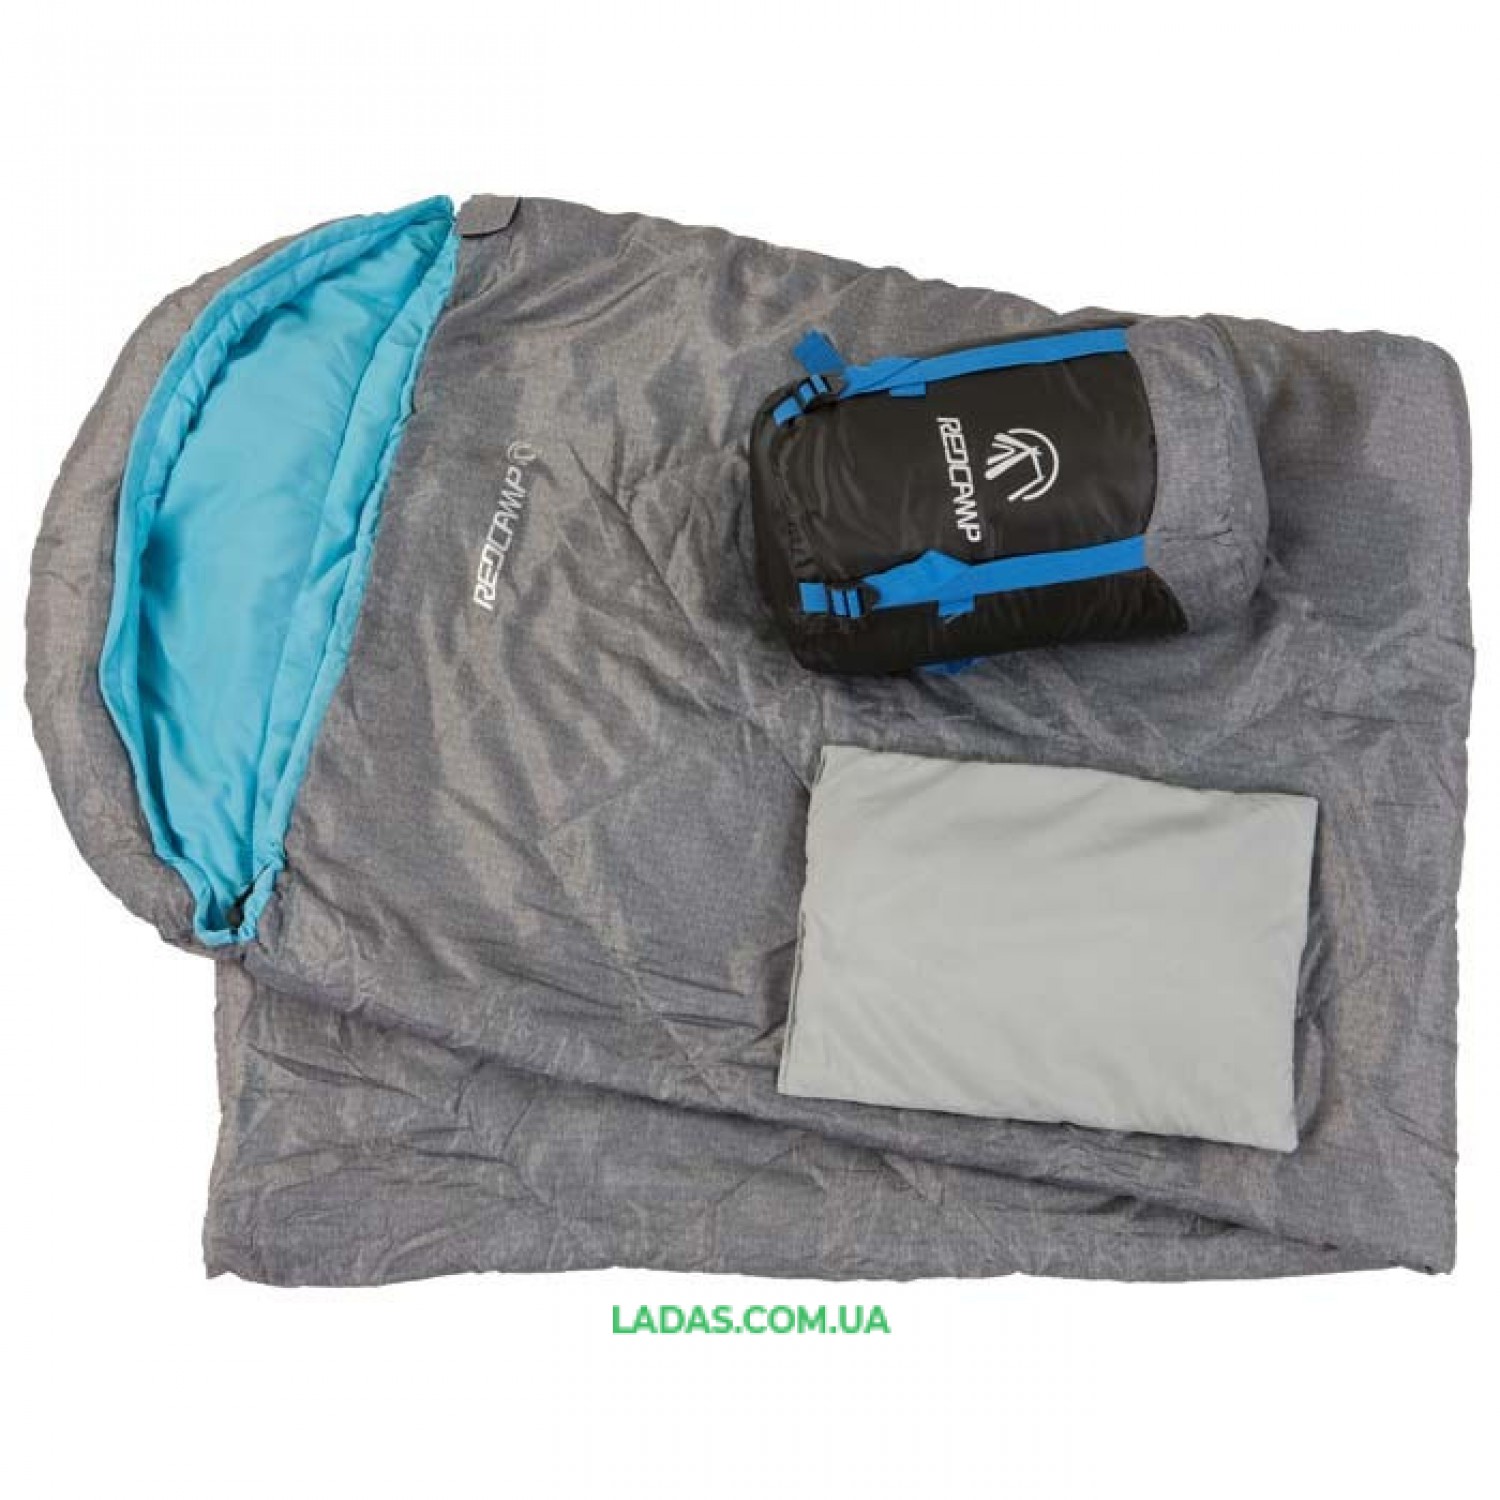 Спальный мешок с капюшоном REDCAMP RC484/2-15BG (PL, 200 на м2, р-р 210*75, цвета в ассорт.)